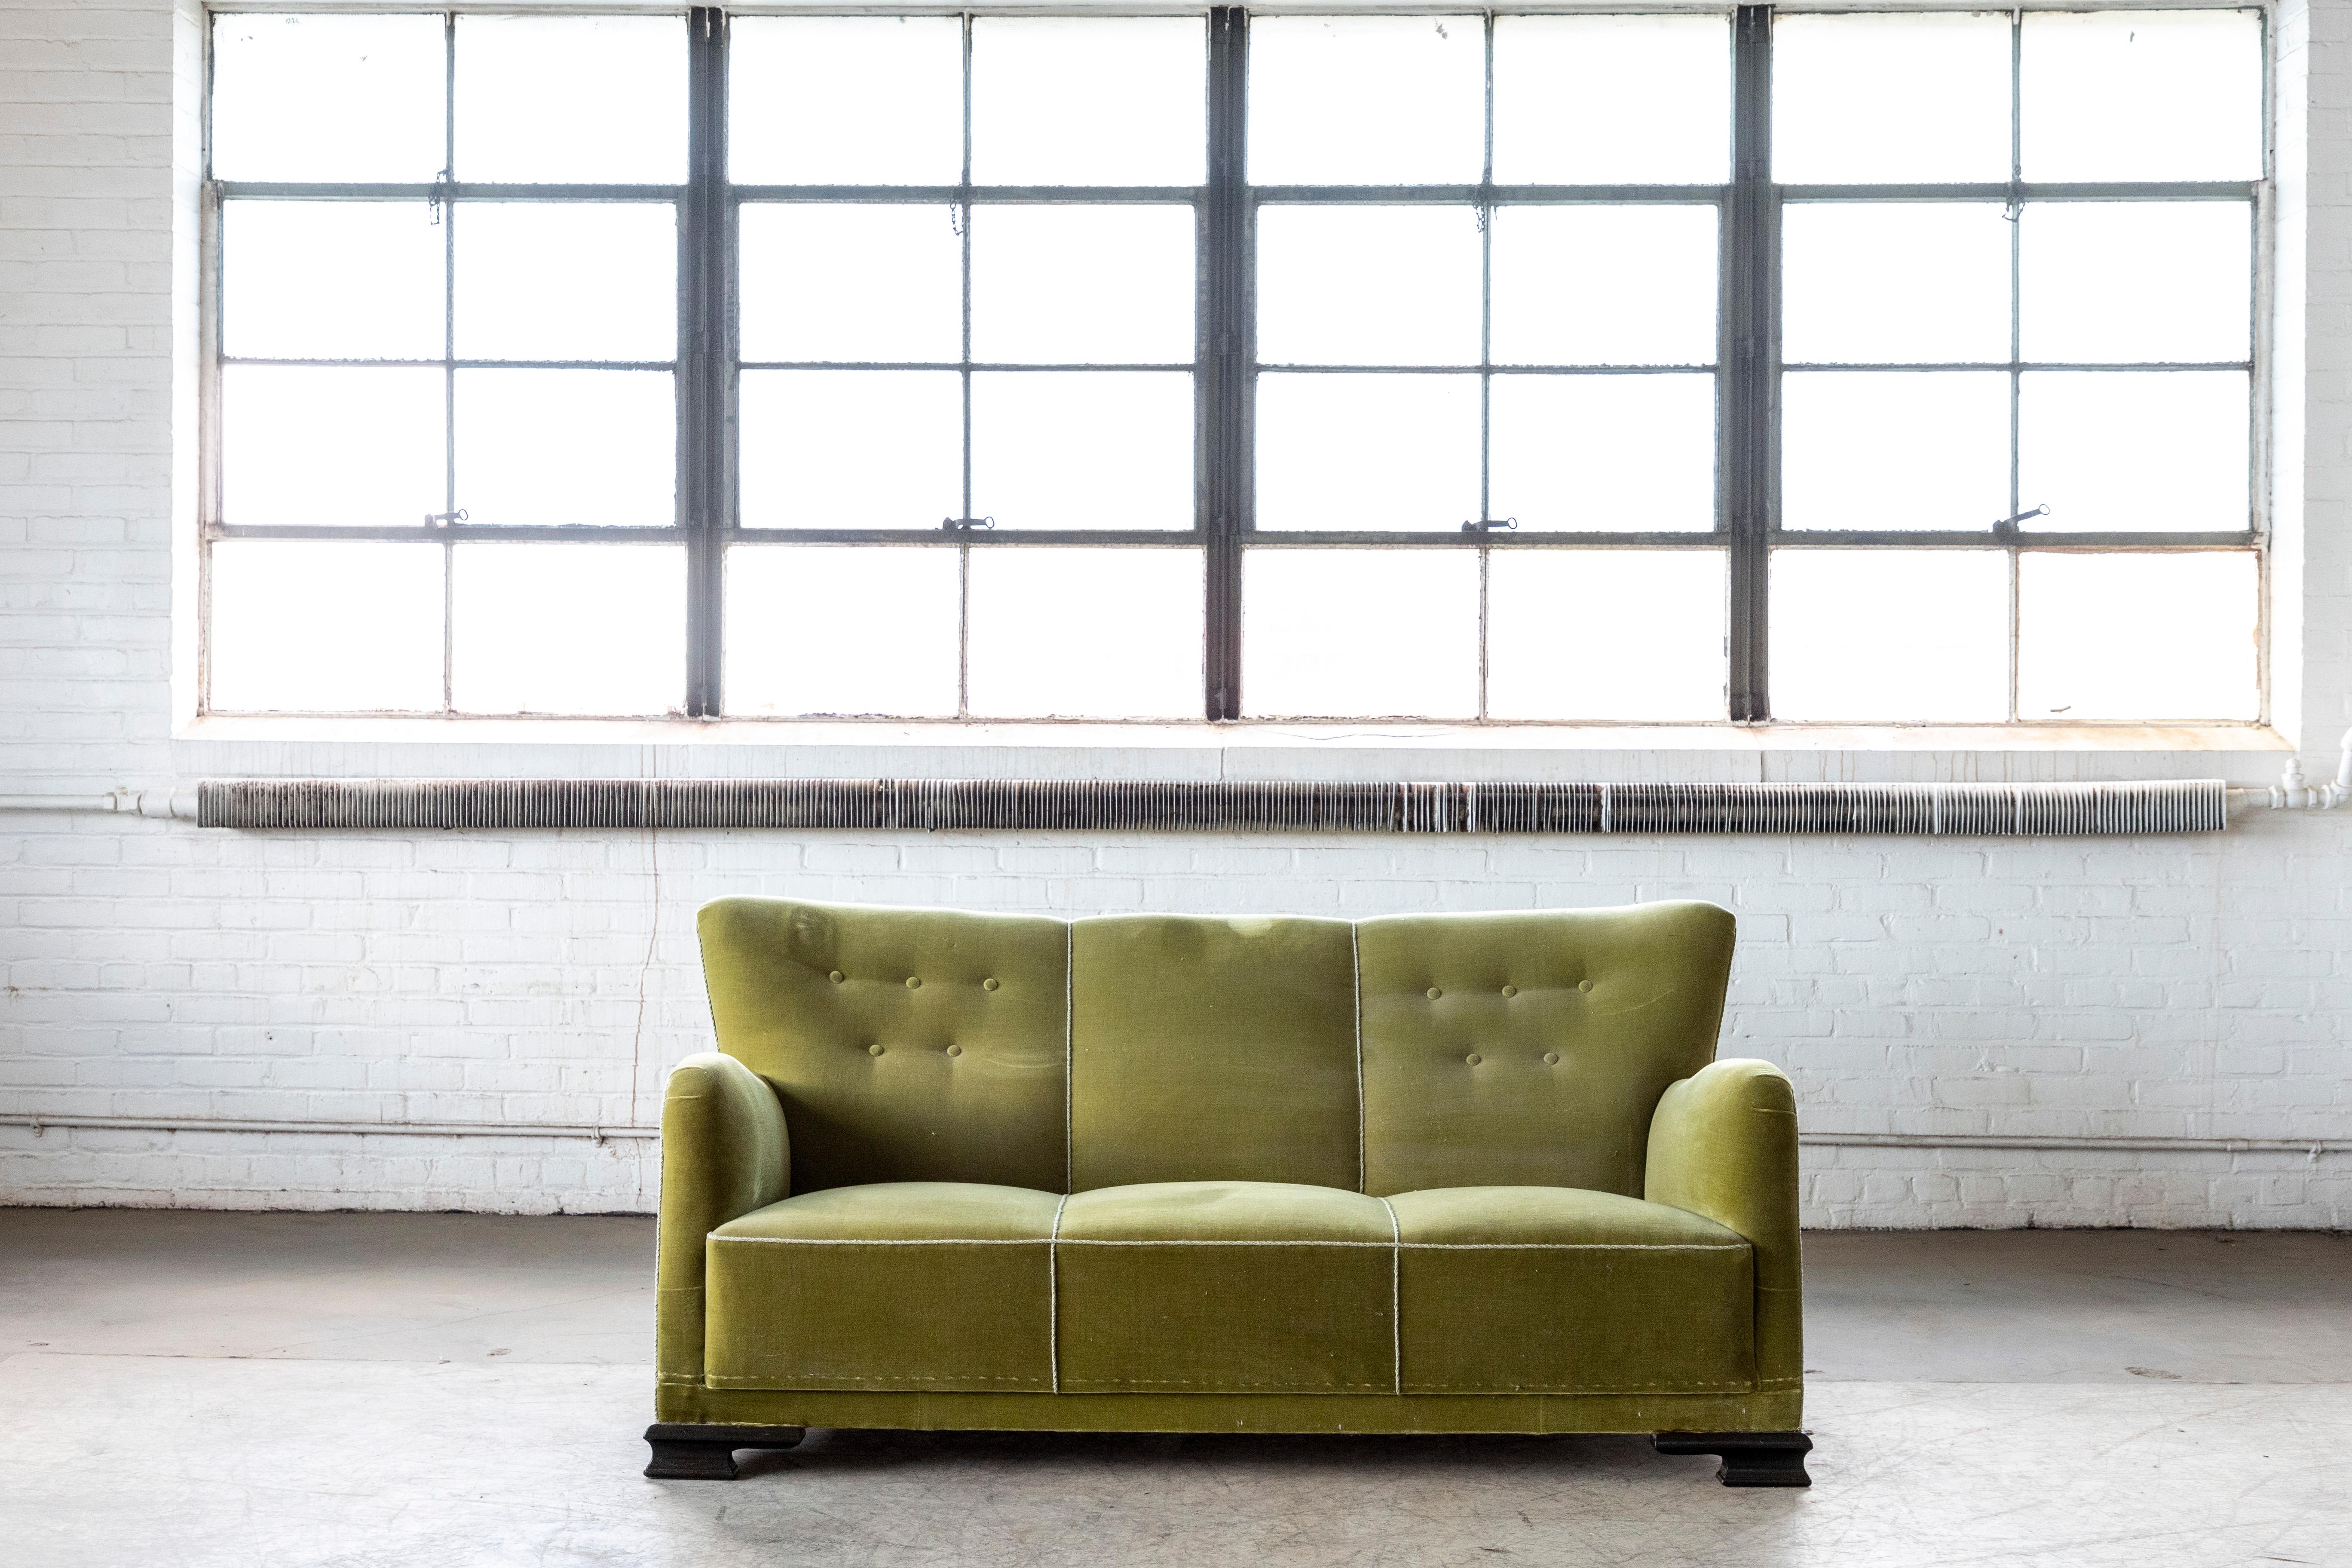 Scandinavian Modern Danish Midcentury Sofa in Green Mohair with Art Deco Legs